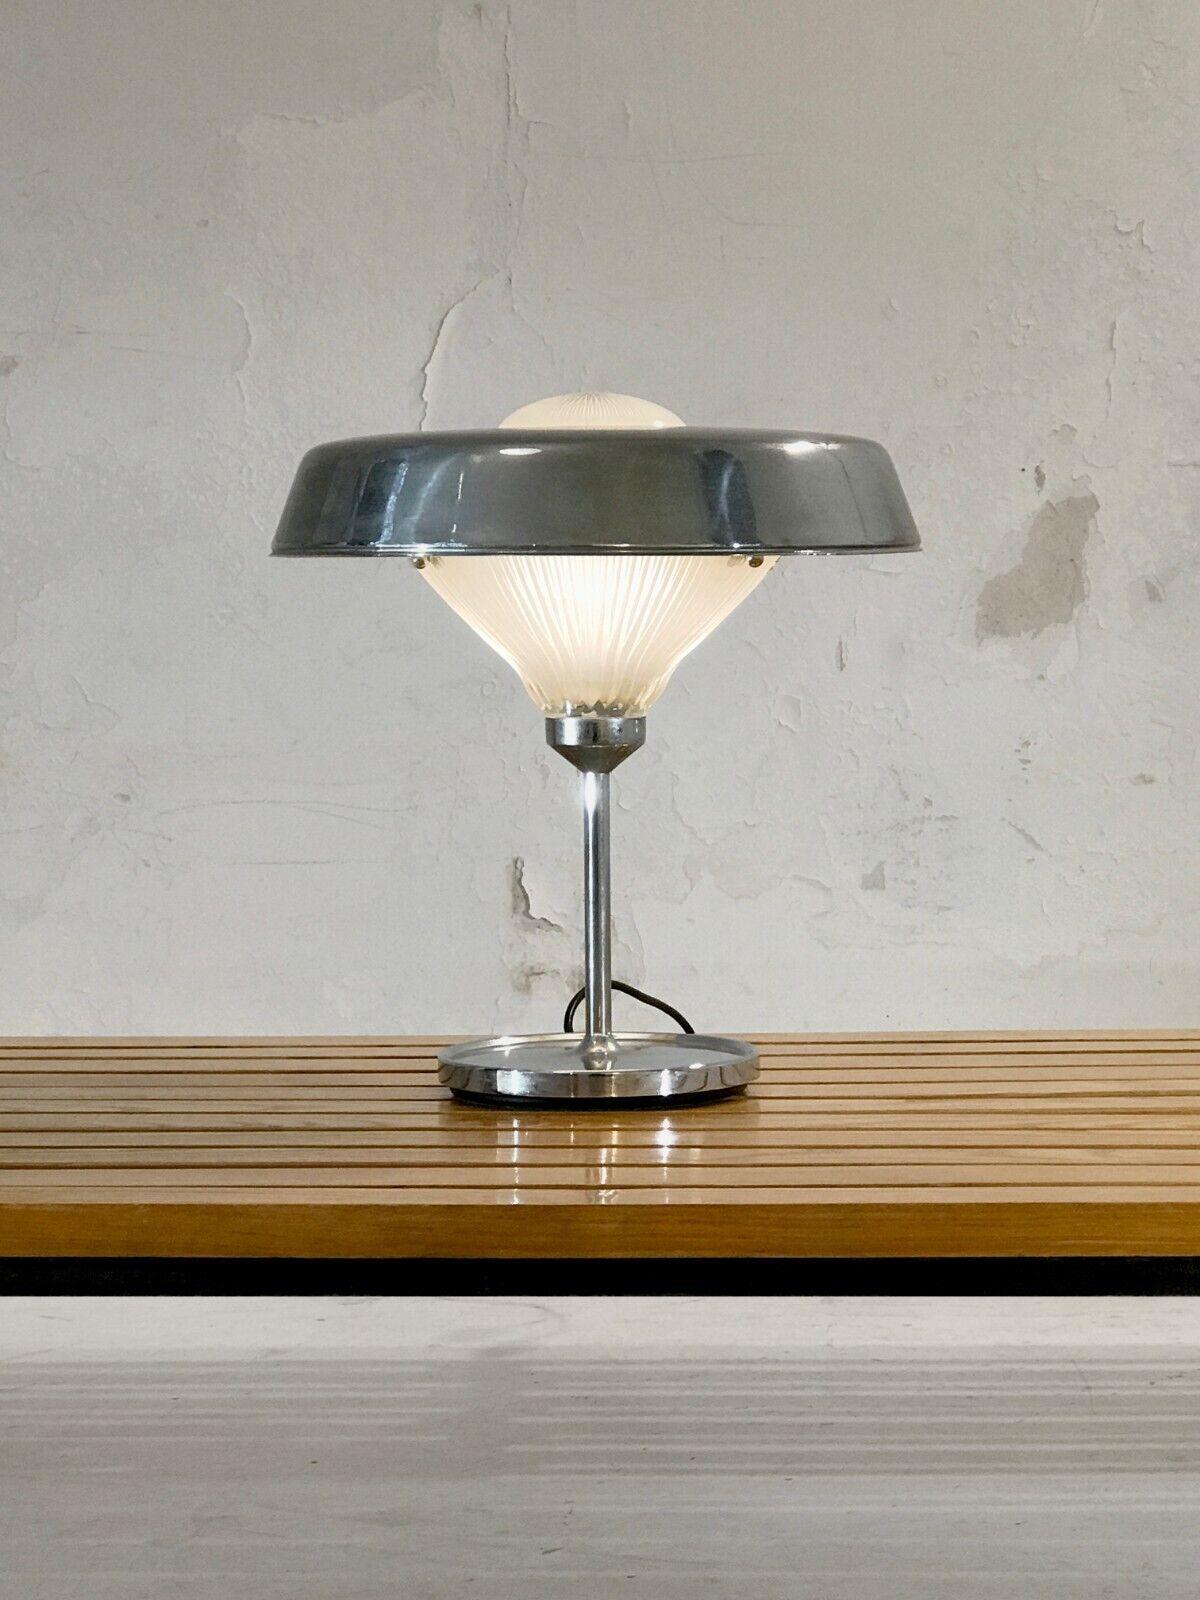 Lampe de table iconique, minimaliste, moderniste, NO AGE, structure en métal chromé, verre épais avec reliefs géométriques, entouré d'un abat-jour aérien en forme d'anneau de Saturne, par BBPR, édition originale Artemide, Italie 1970.

Un deuxième